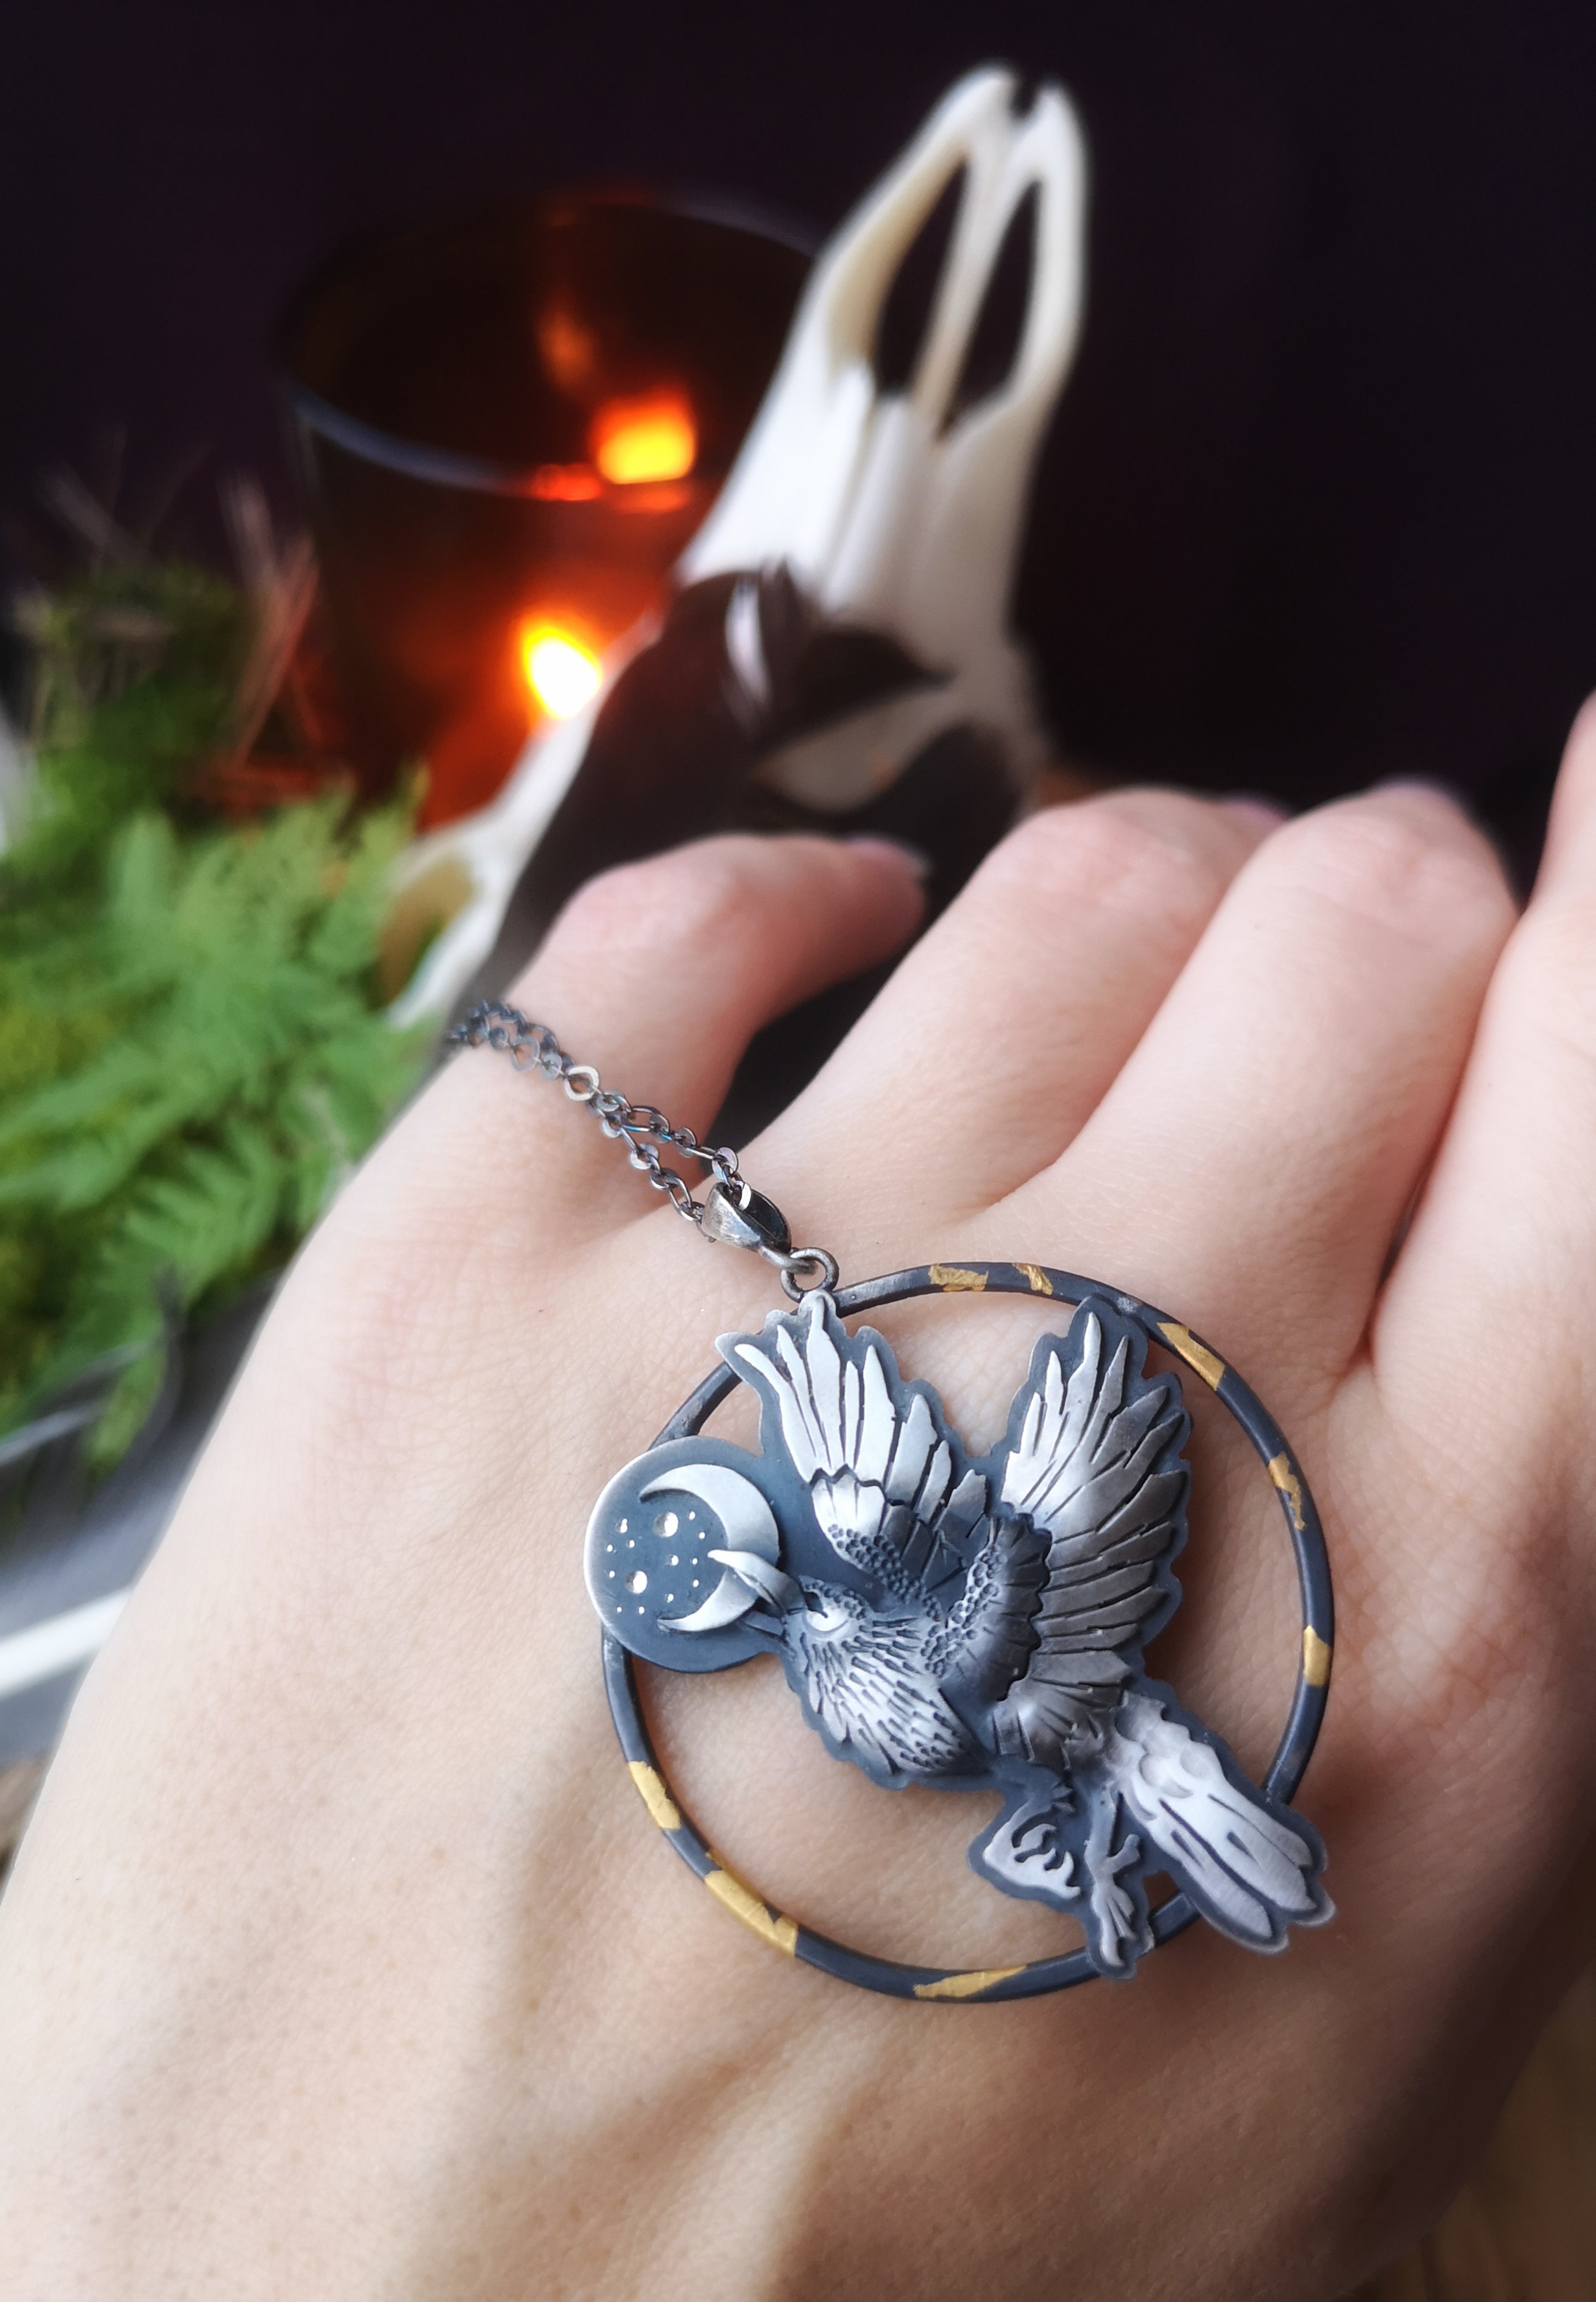 Raven's Awakening Necklace